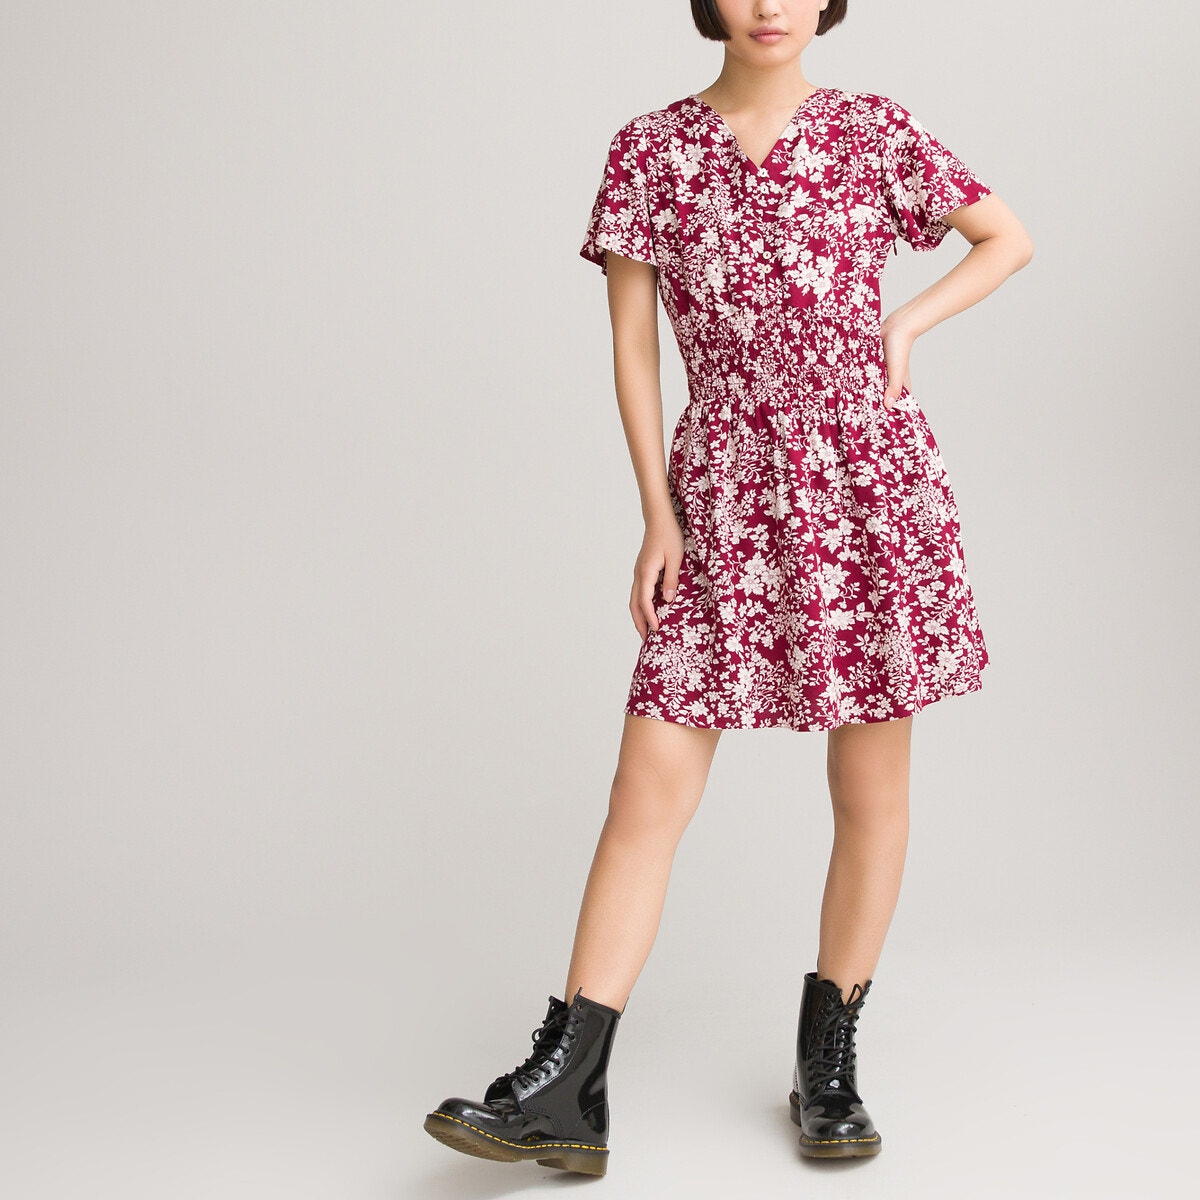 Φόρεμα με σούρες και φλοράλ μοτίβο, 10-18 ετών